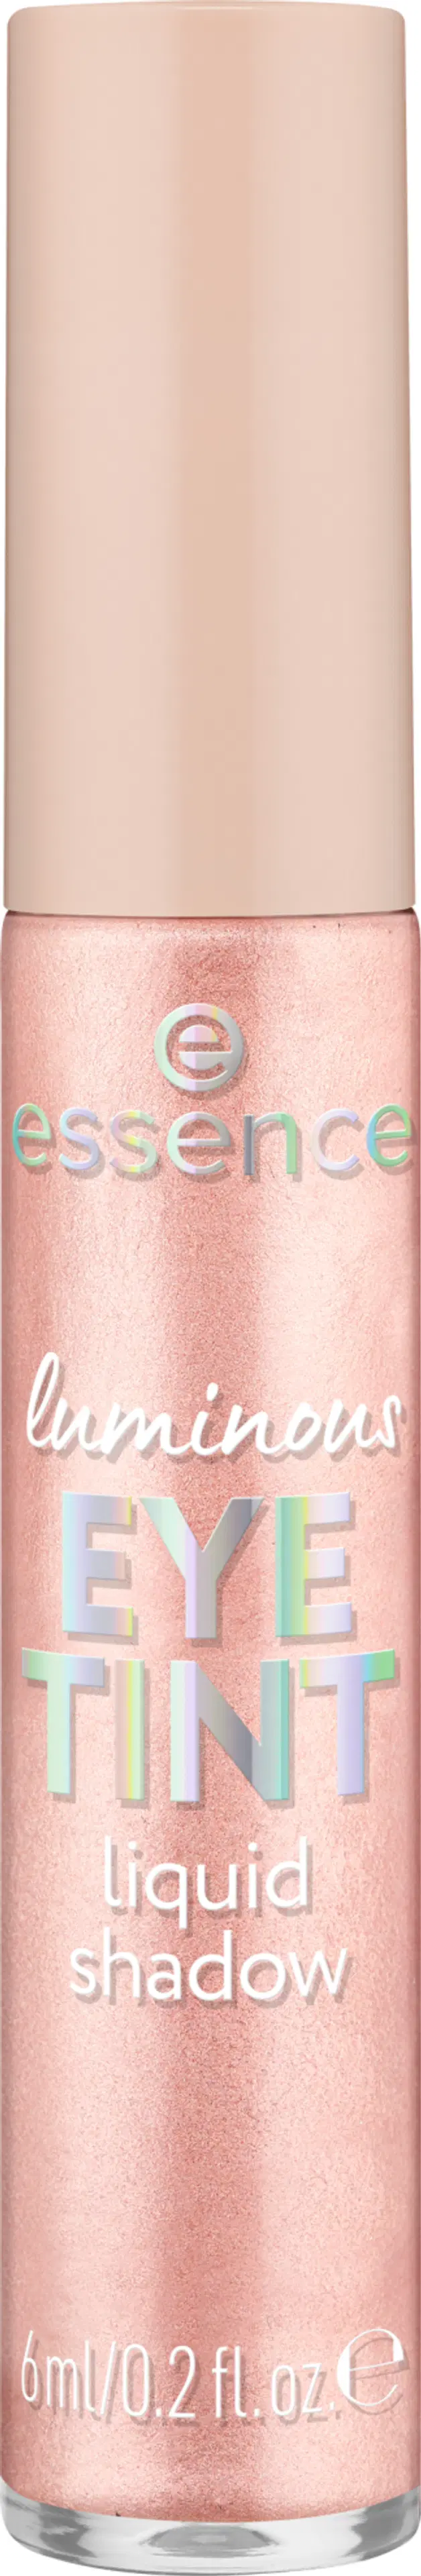 essence luminous EYE TINT liquid shadow nestemäinen luomiväri 6 ml